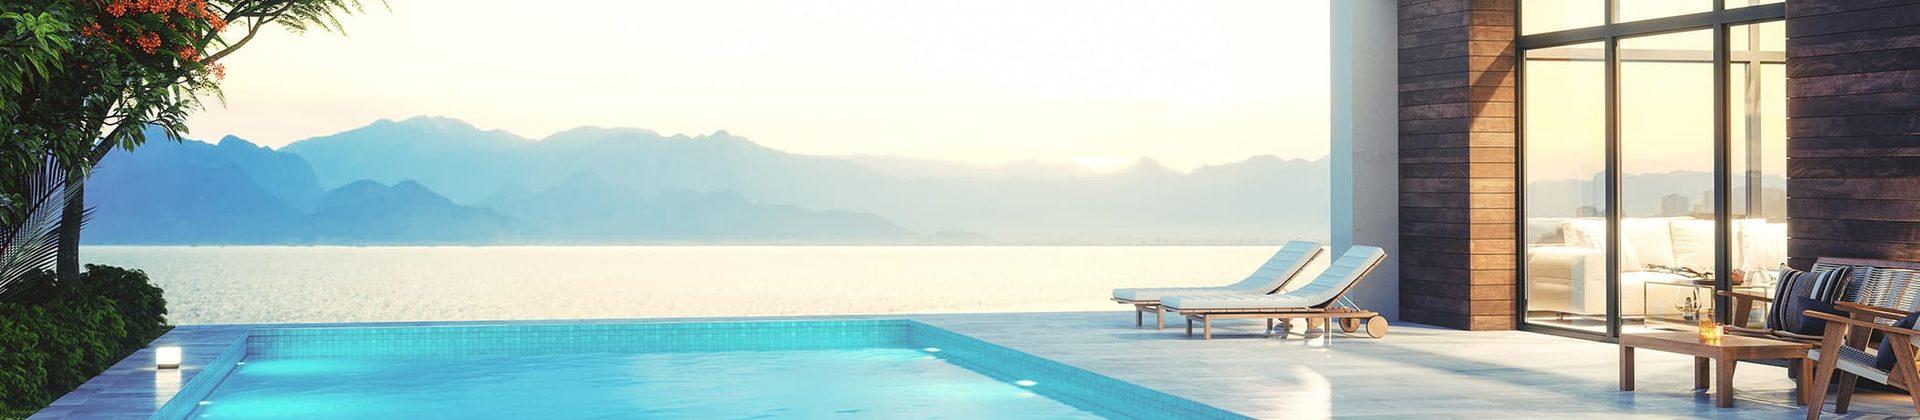 Ferienwohnung mit Seeblick am Gardasee - TUI